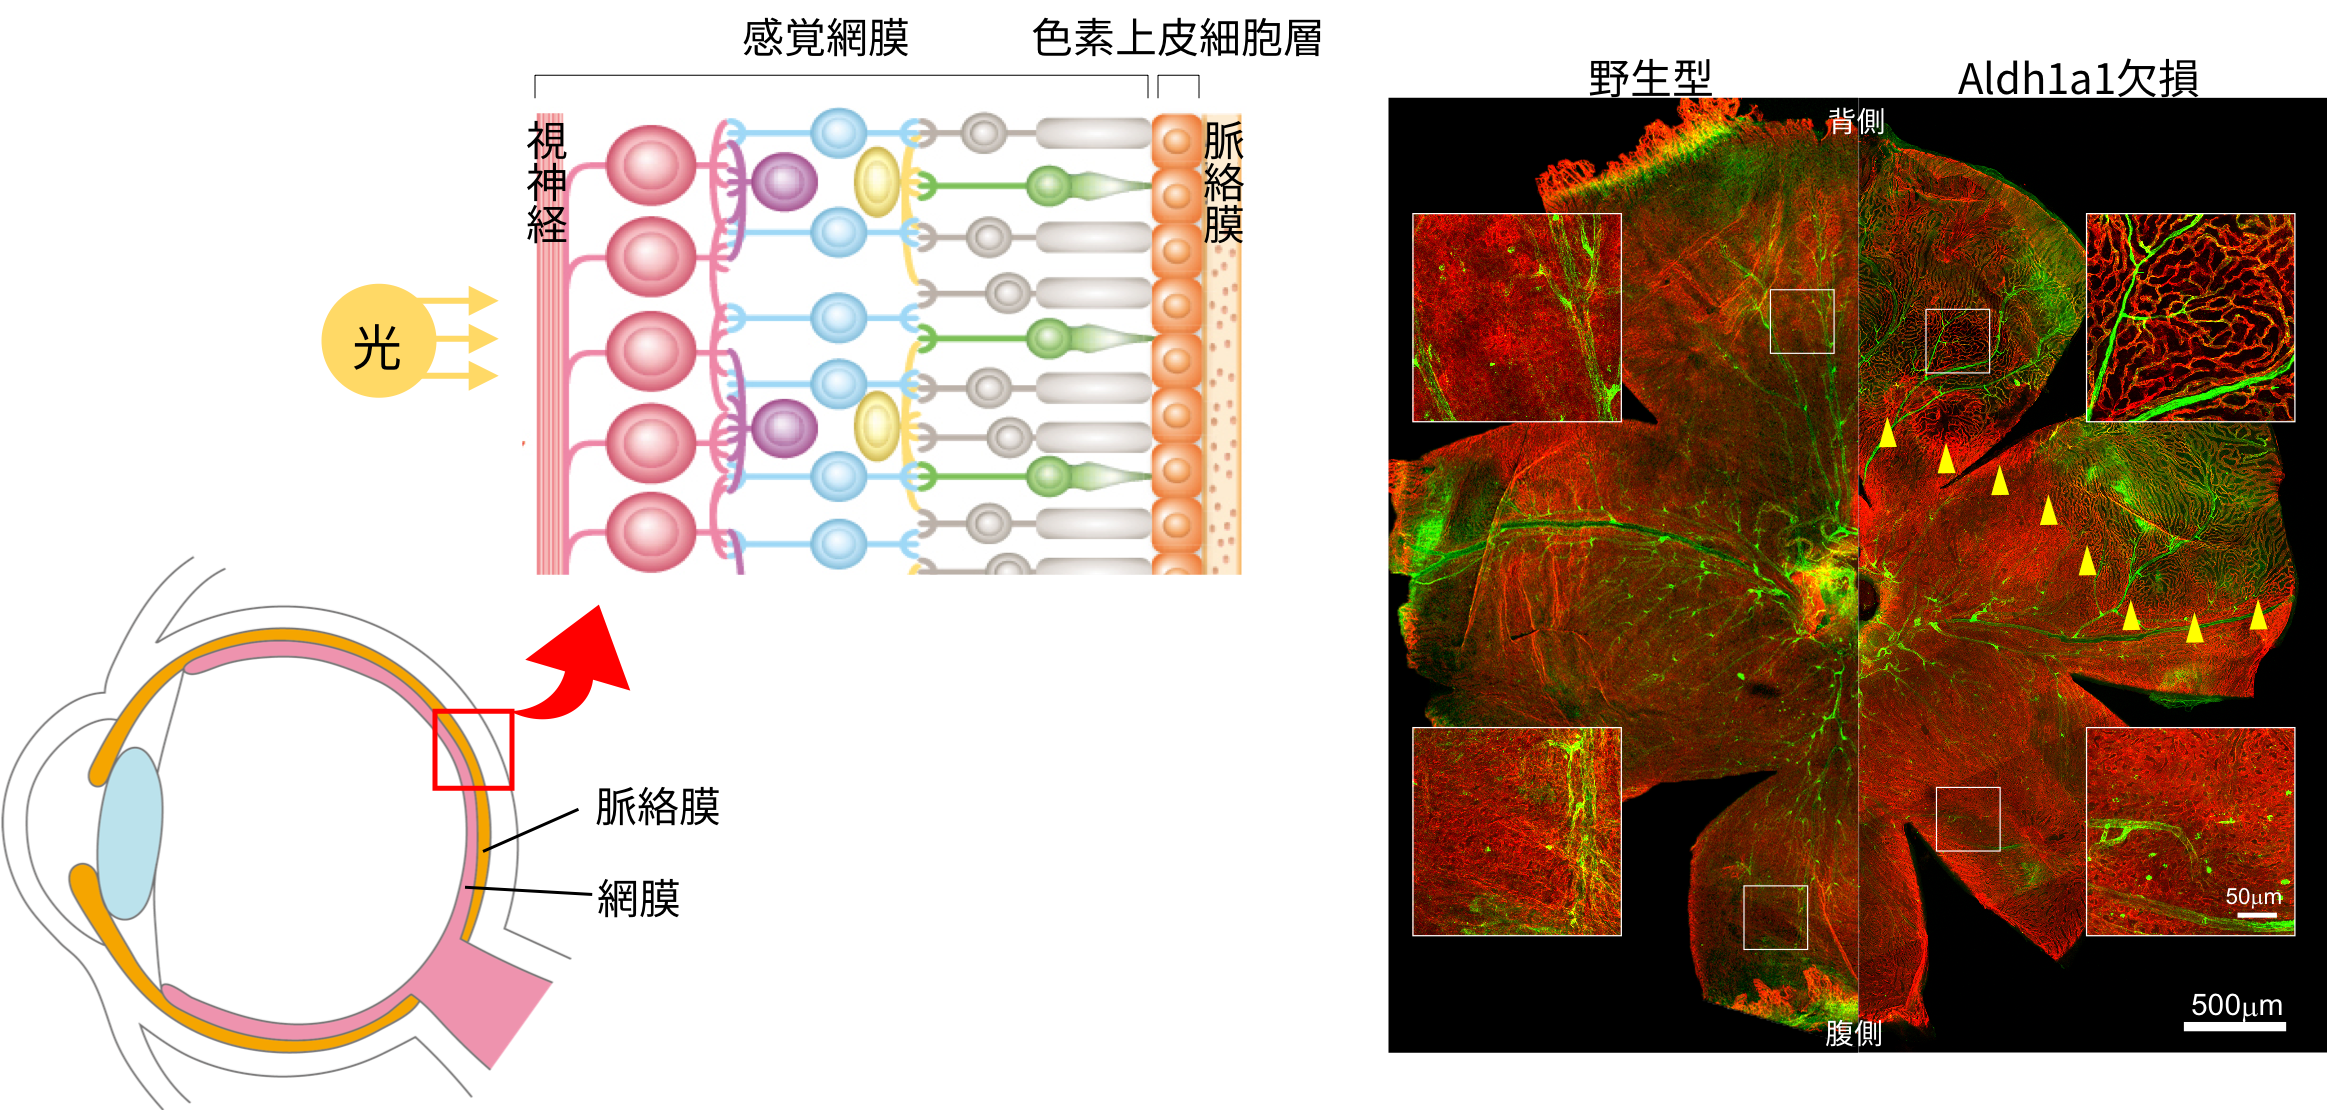 左：眼の基本的な構造。右：眼球における血管形成の免疫染⾊。イソレクチンB4（緑）は血管を、エンドムチン（赤）は微小血管を⽰している。Aldh1a1欠損マウスの背側（右上）で、血管形成不全が観察される。